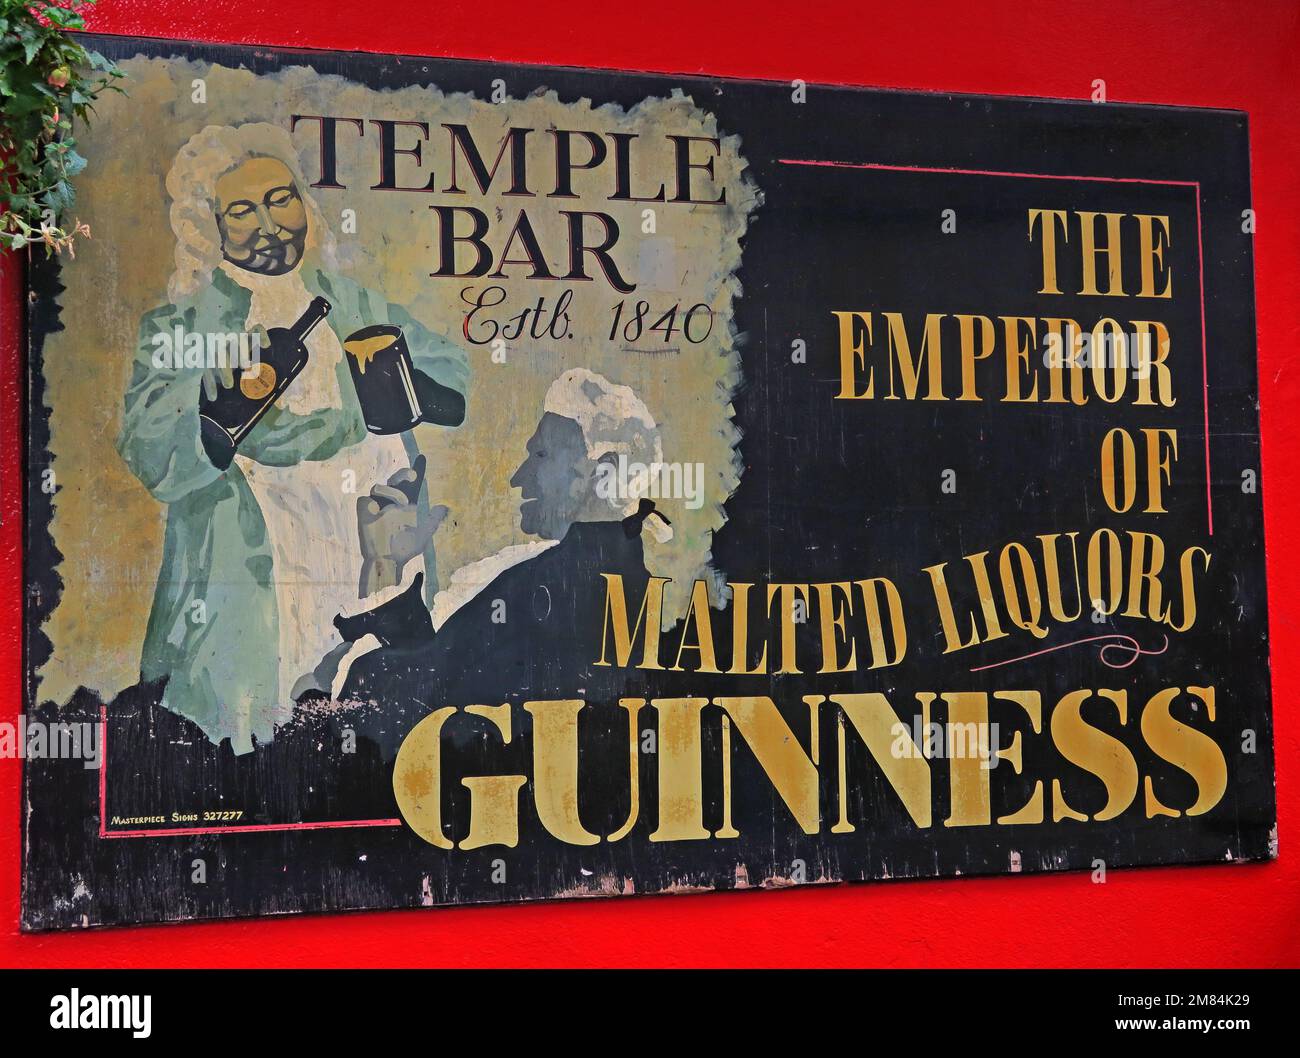 Guinness Emperor of malted liquors, at The Temple Bar, Dublin, Est 1840, 47-48 Temple Bar, Dublin 2, D02 N725, Eire, Ireland Stock Photo